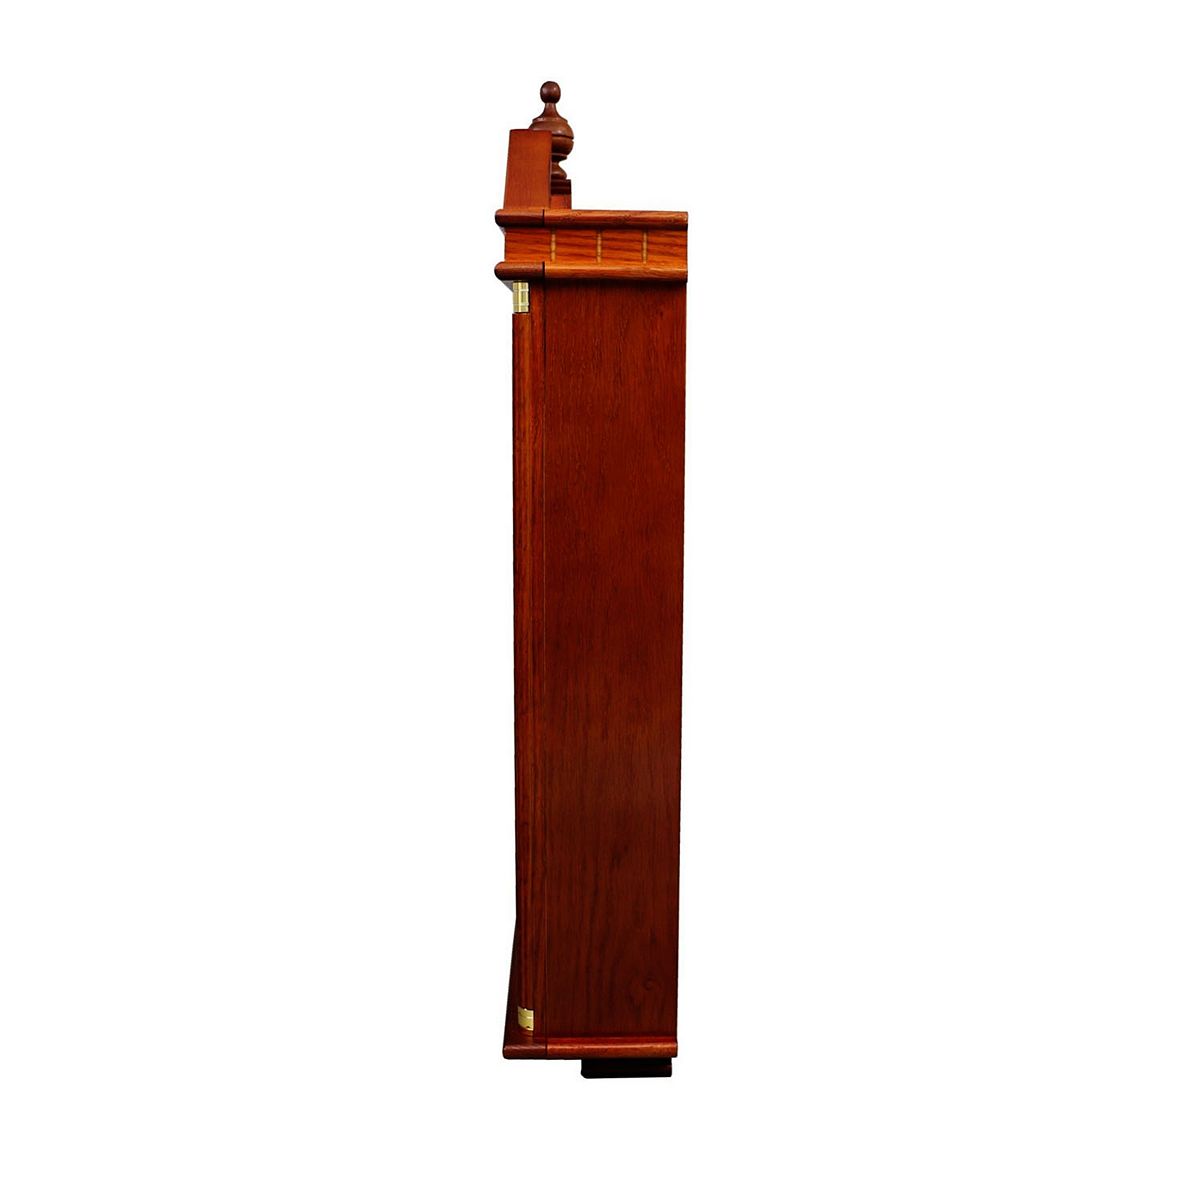 seiko-wall-clock-regal-oak-case-pedulum-and-chime-dark-brown-qxh107blh – 3.0